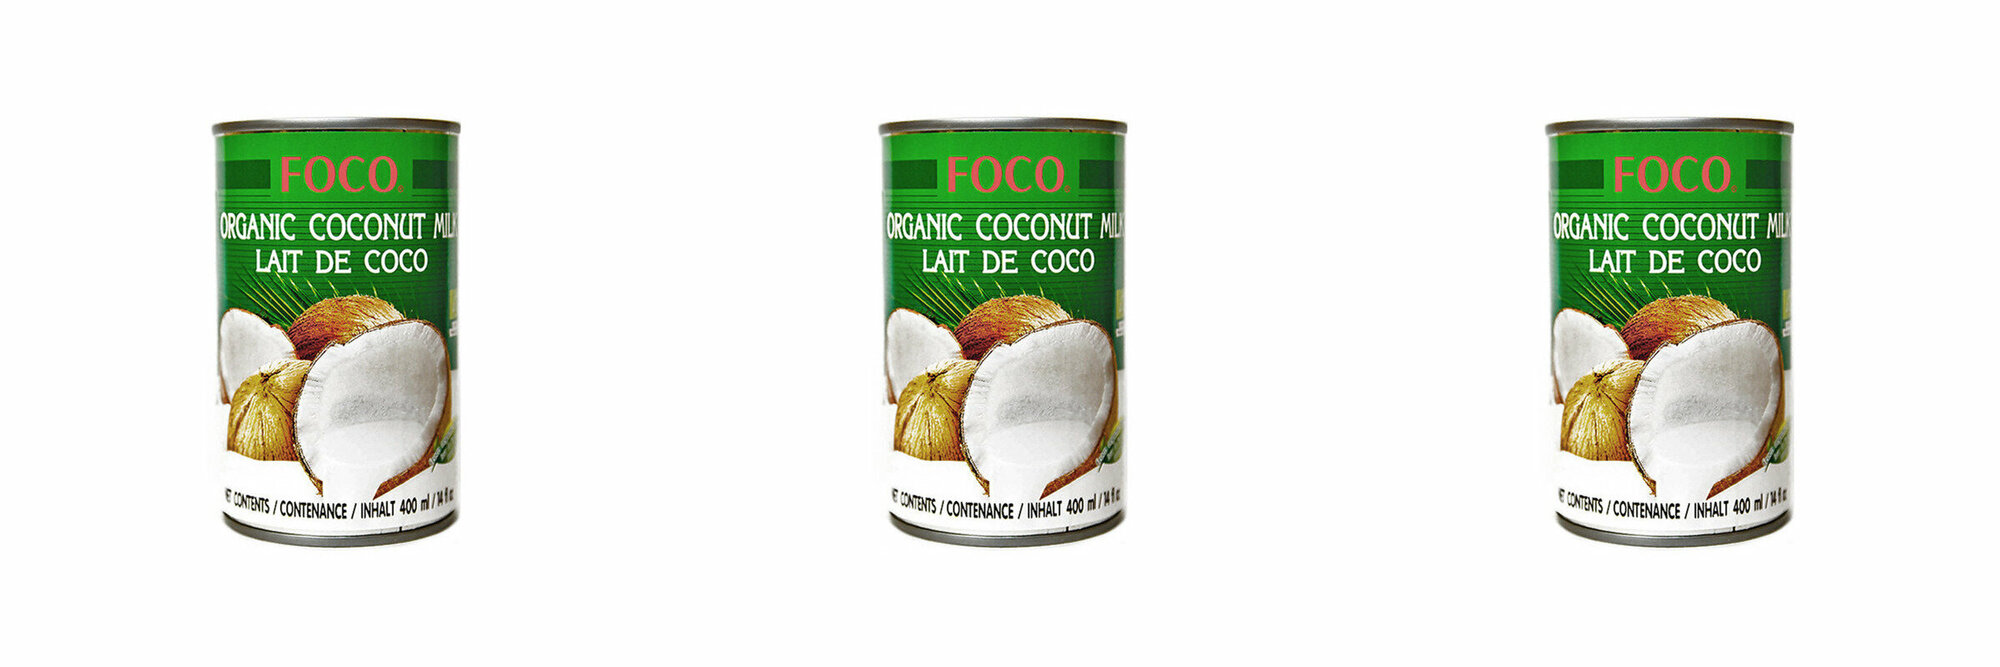 FOCO Растительный напиток Органическое кокосовое молоко, 400 мл, 3 шт